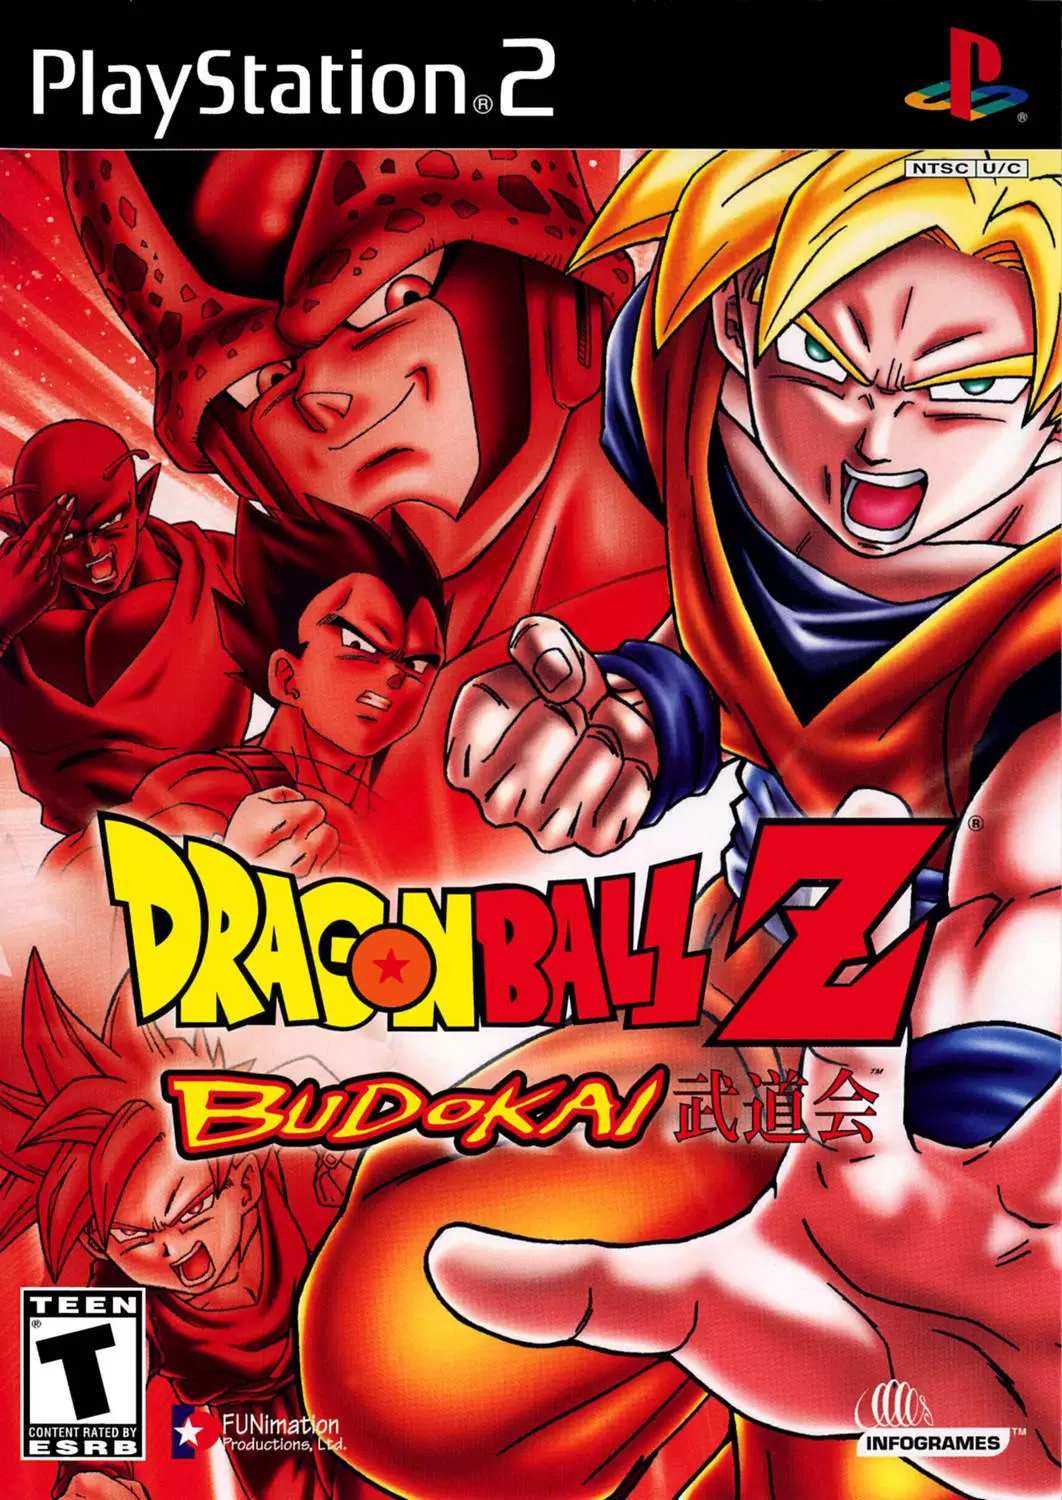 PS2 Games - Dragon Ball Z: Budokai